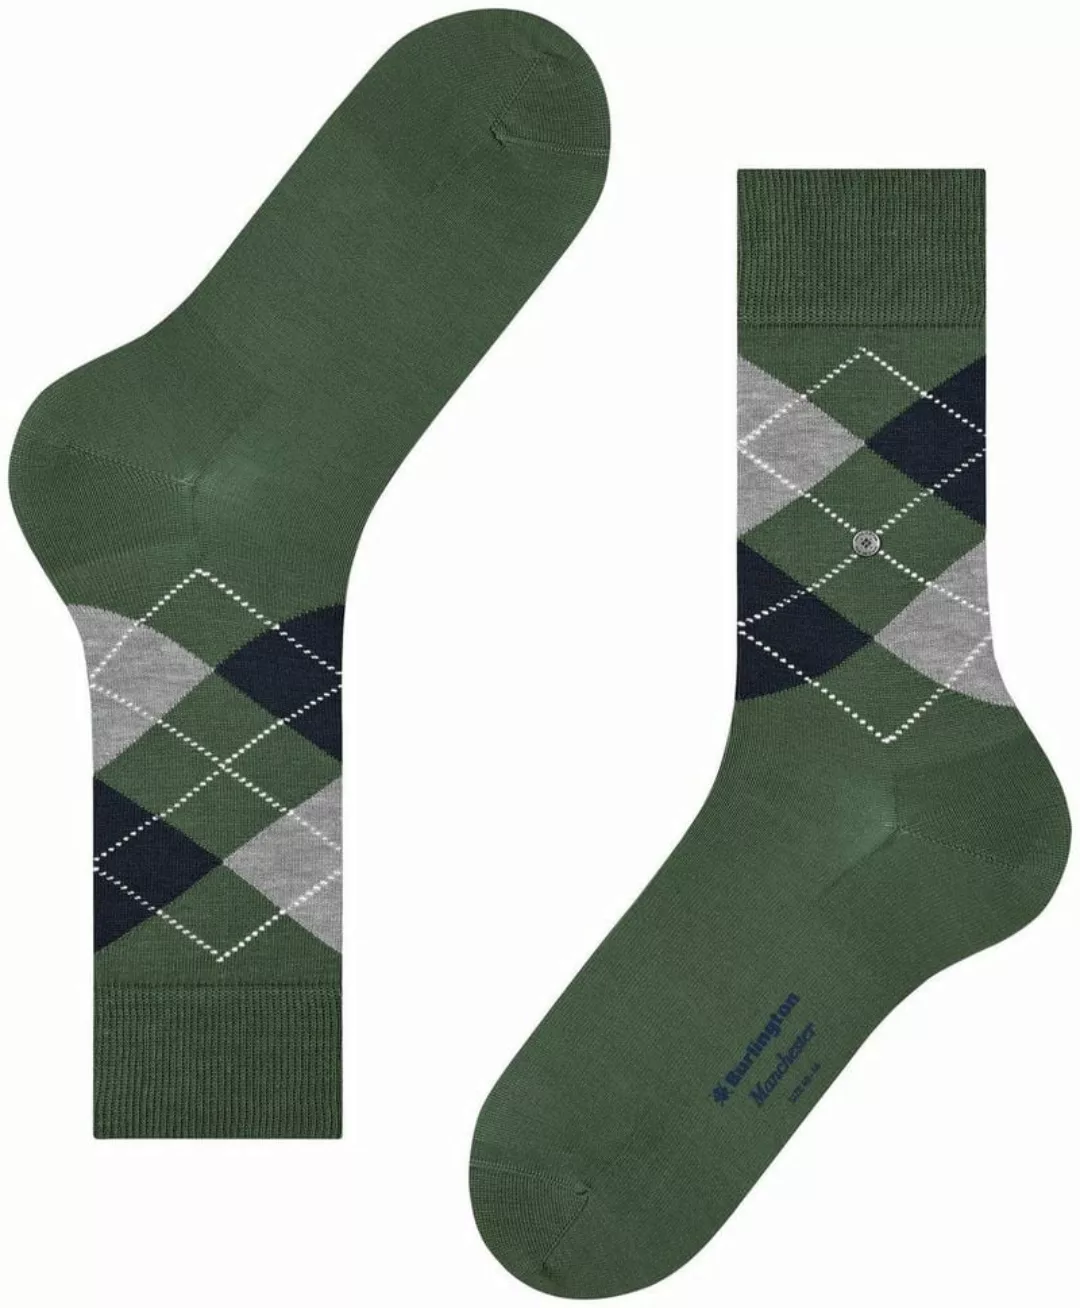 Burlington Manchester Socken Kariert Grün 7982 - Größe 40-46 günstig online kaufen